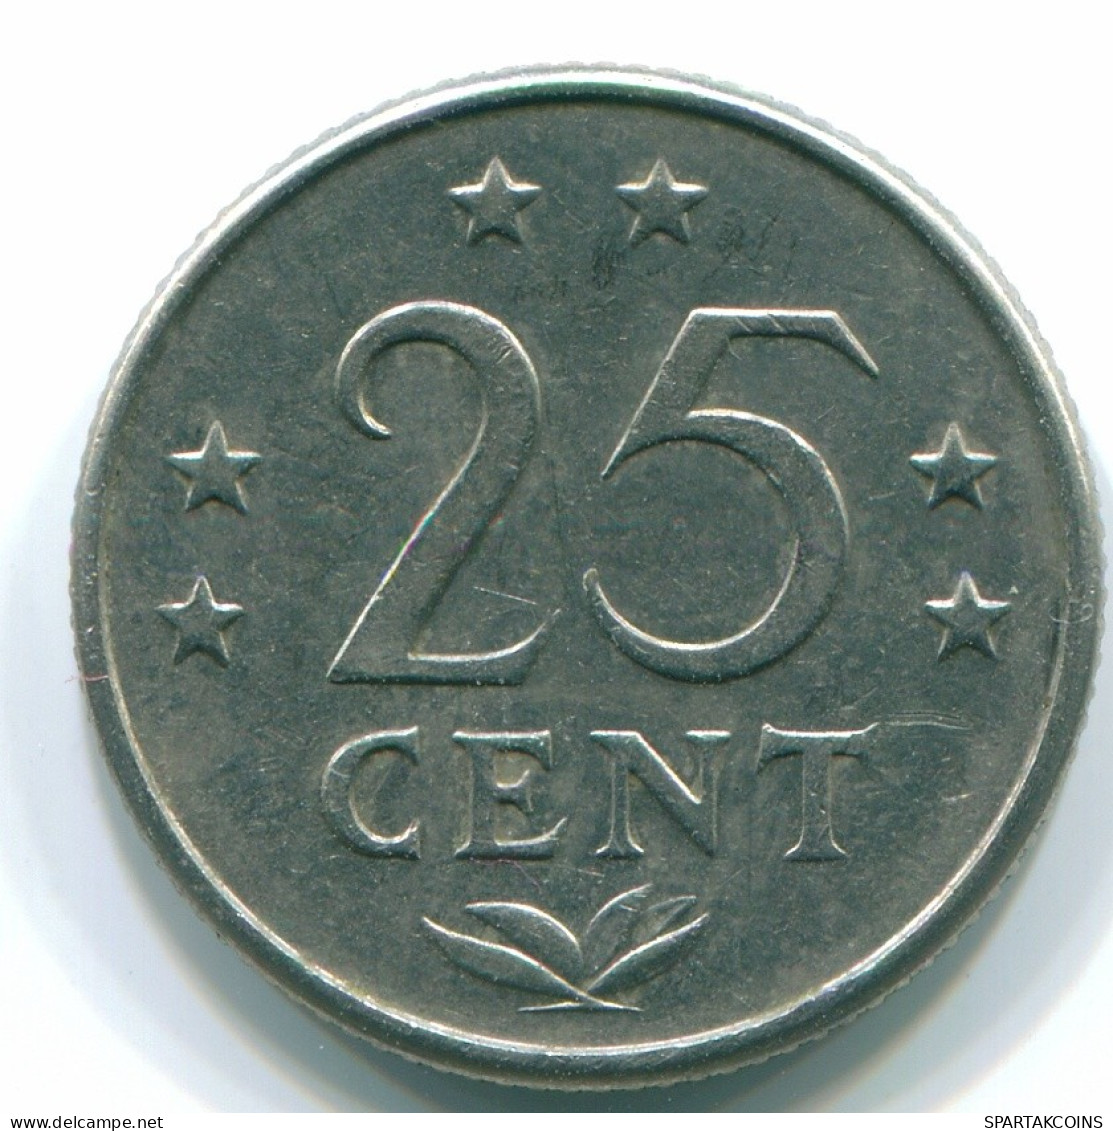 25 CENTS 1970 ANTILLAS NEERLANDESAS Nickel Colonial Moneda #S11436.E.A - Netherlands Antilles